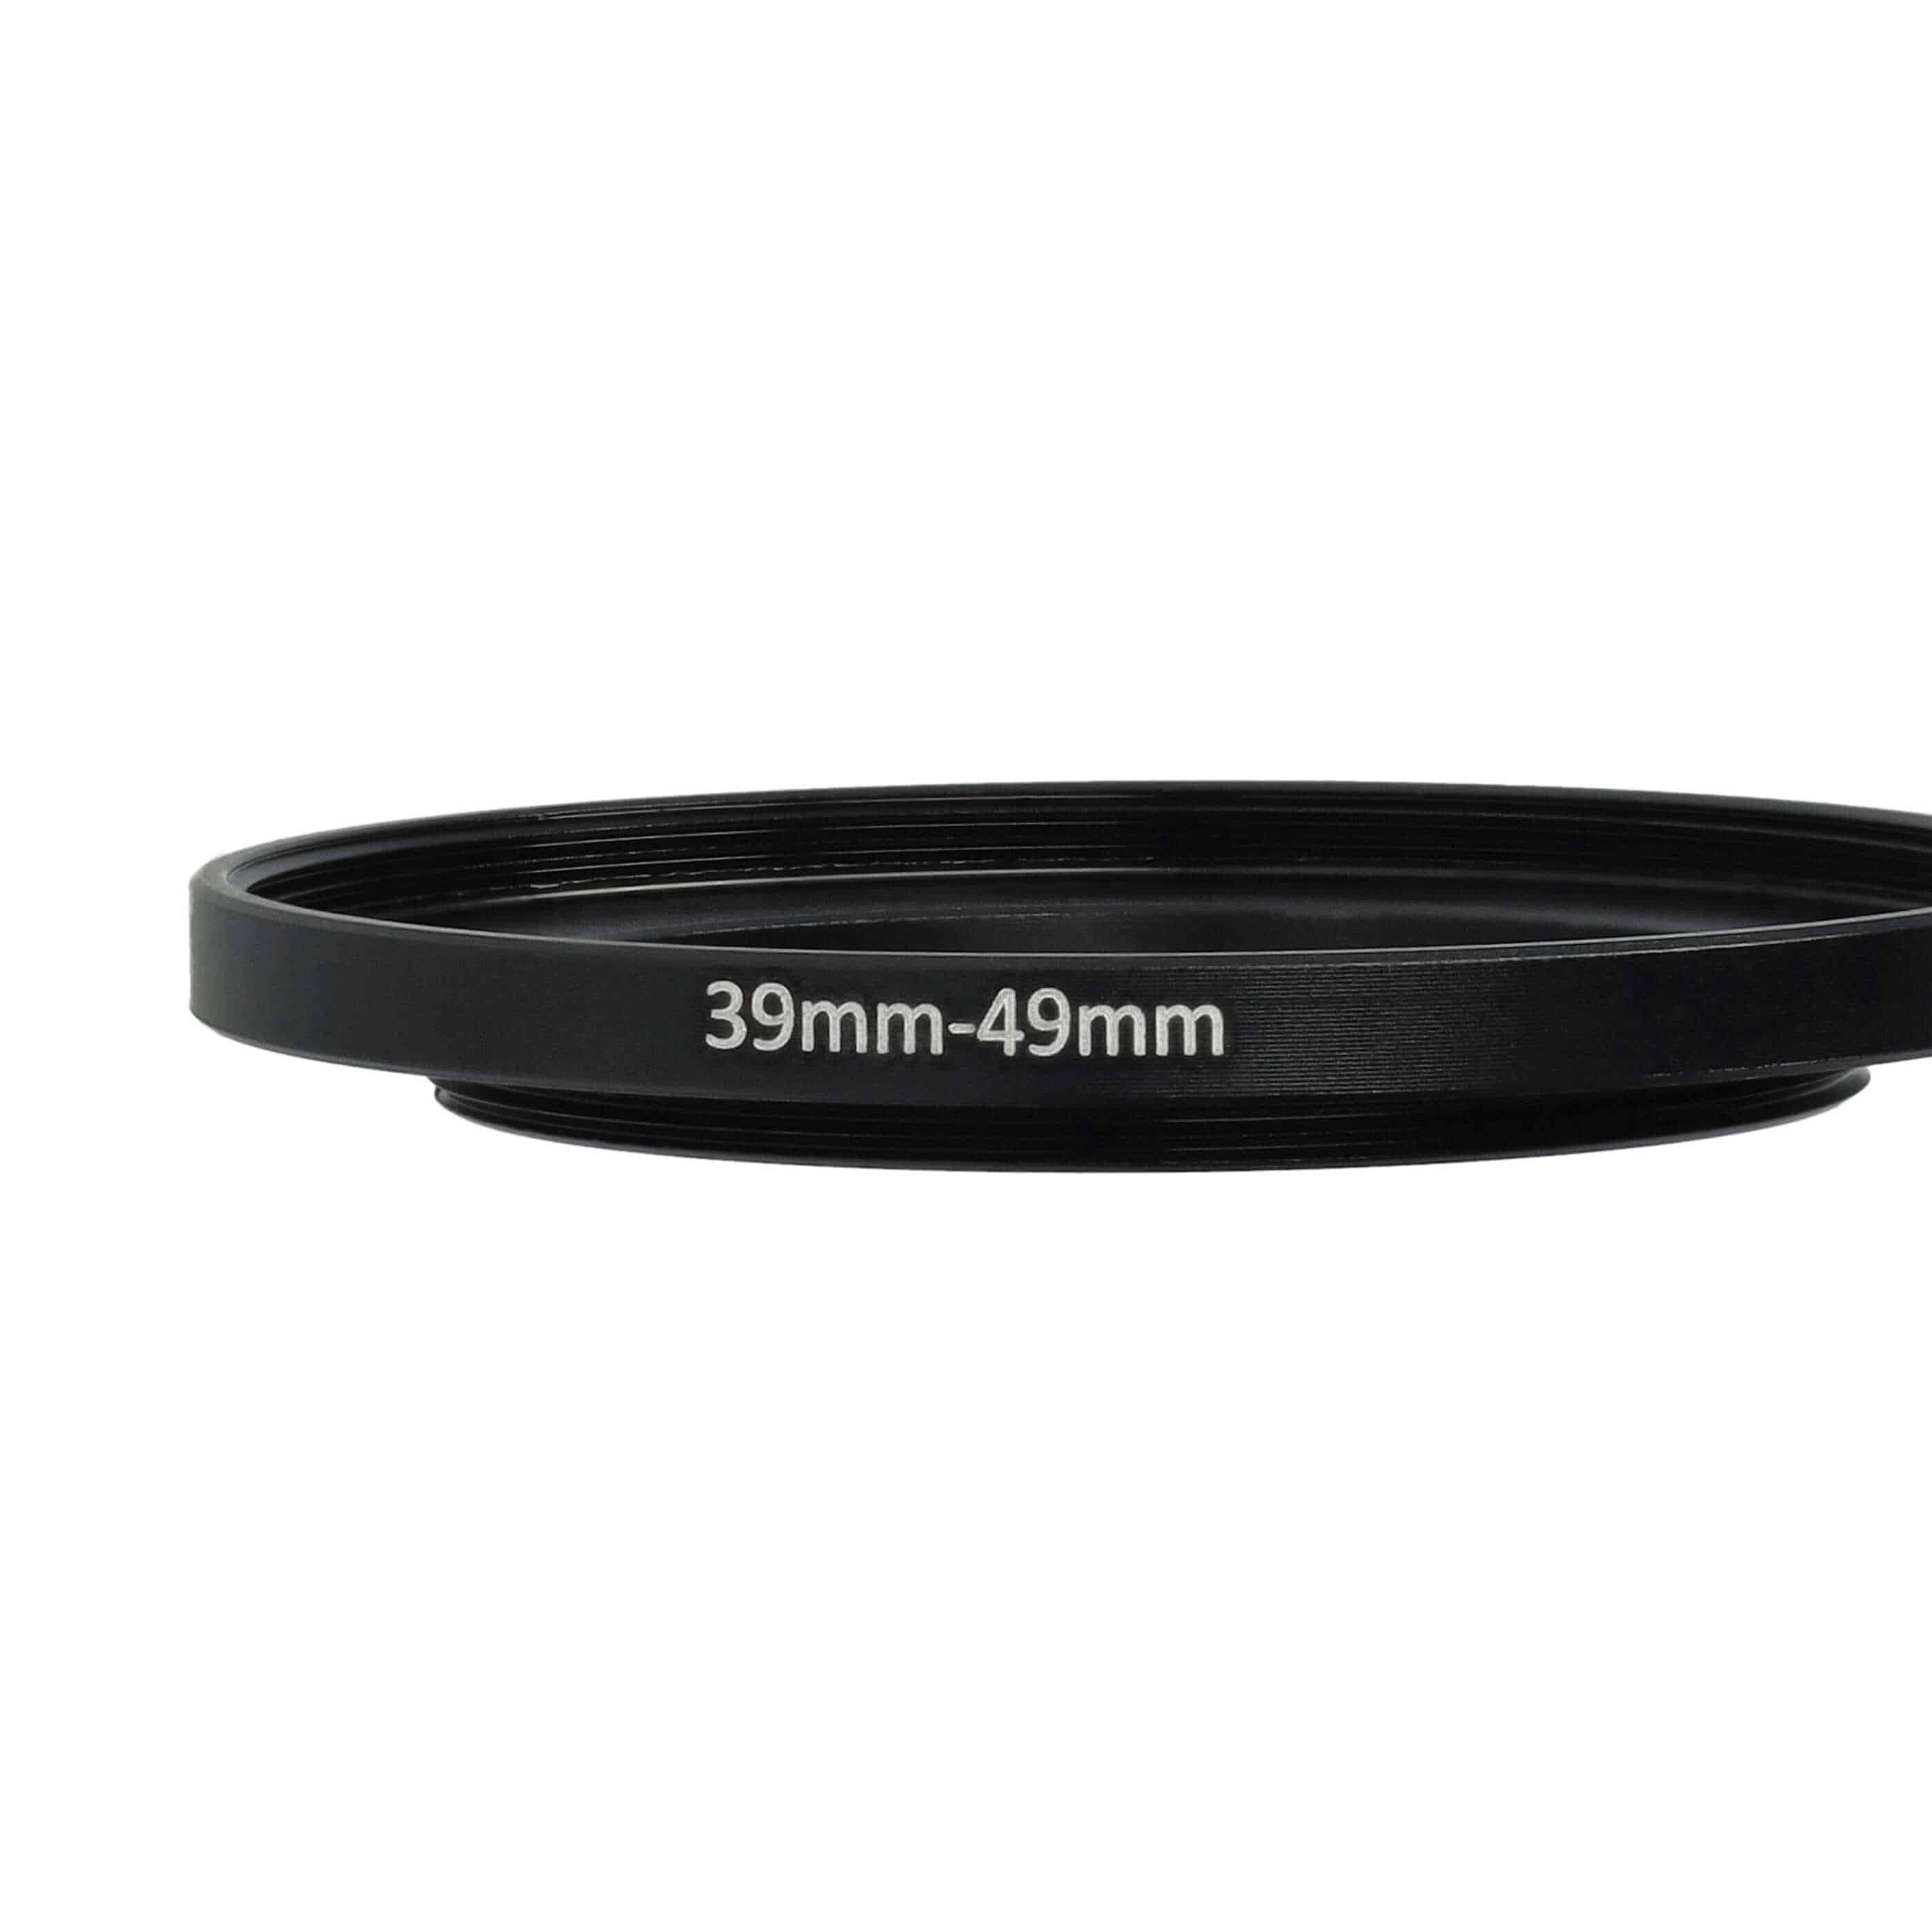 Bague Step-up 39 mm vers 49 mm pour divers objectifs d'appareil photo - Adaptateur filtre